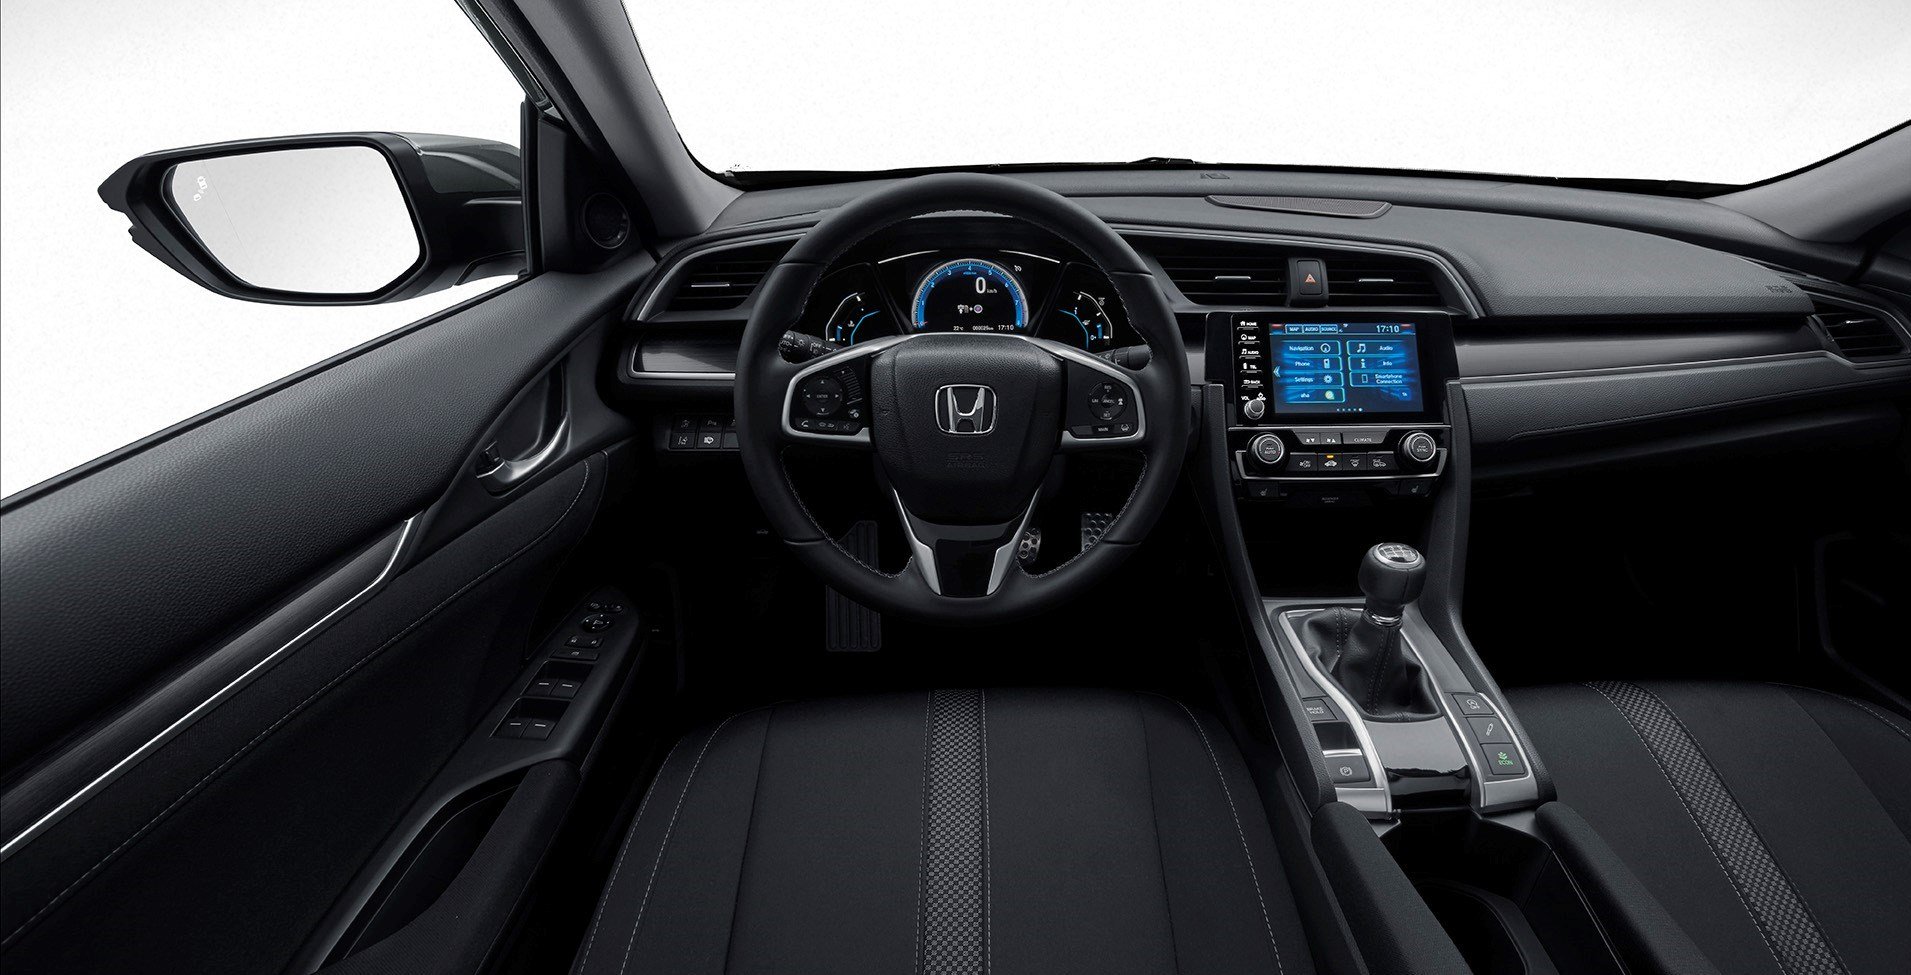 2020 Honda Civic Hatchback tanıtıldı: Hangi yenilikler var?